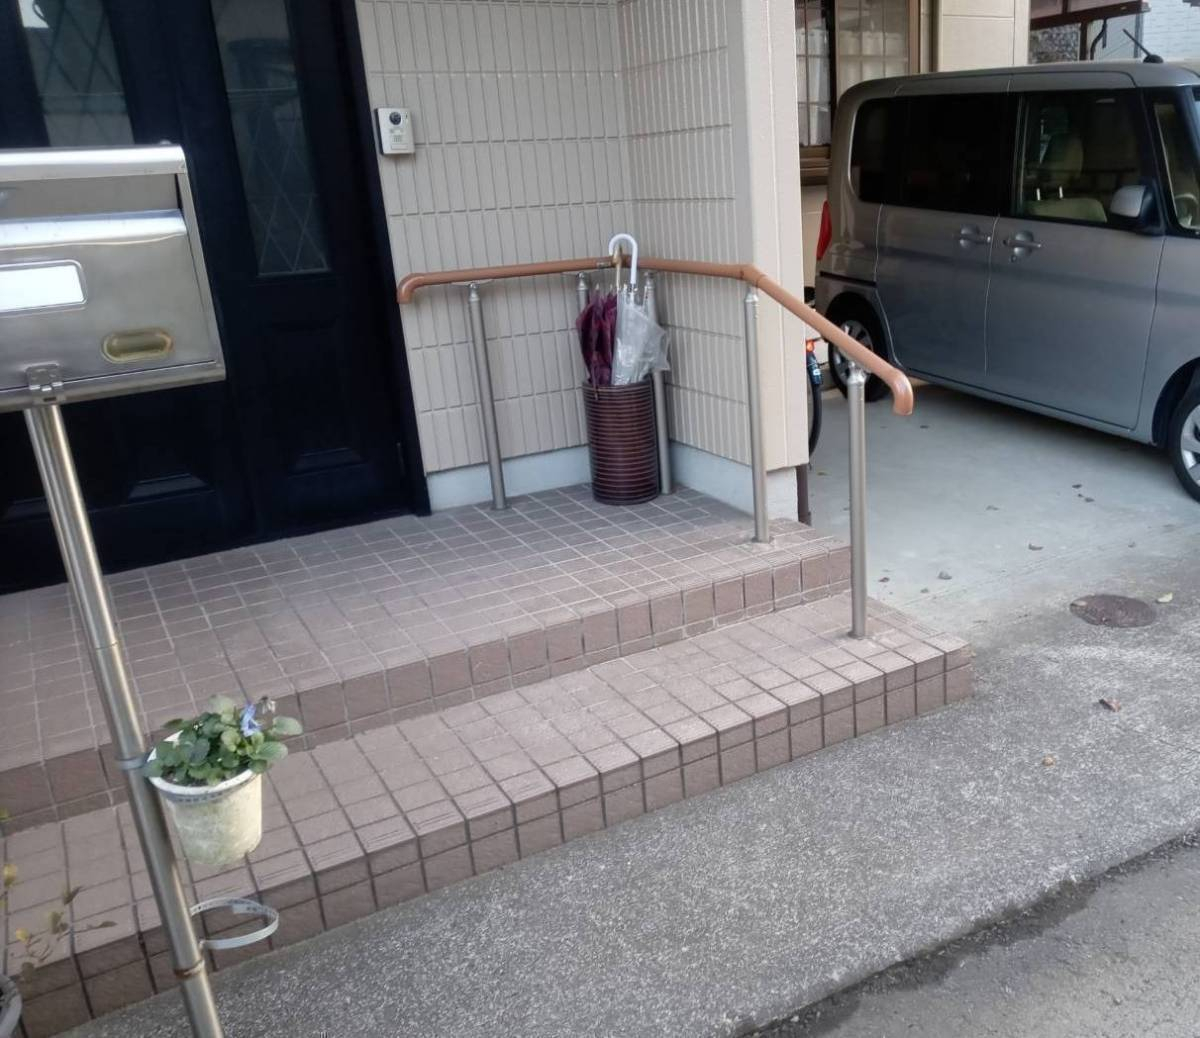 スルガリックス 静岡店の玄関前の段差のために手すりをつけてほしいの施工後の写真1